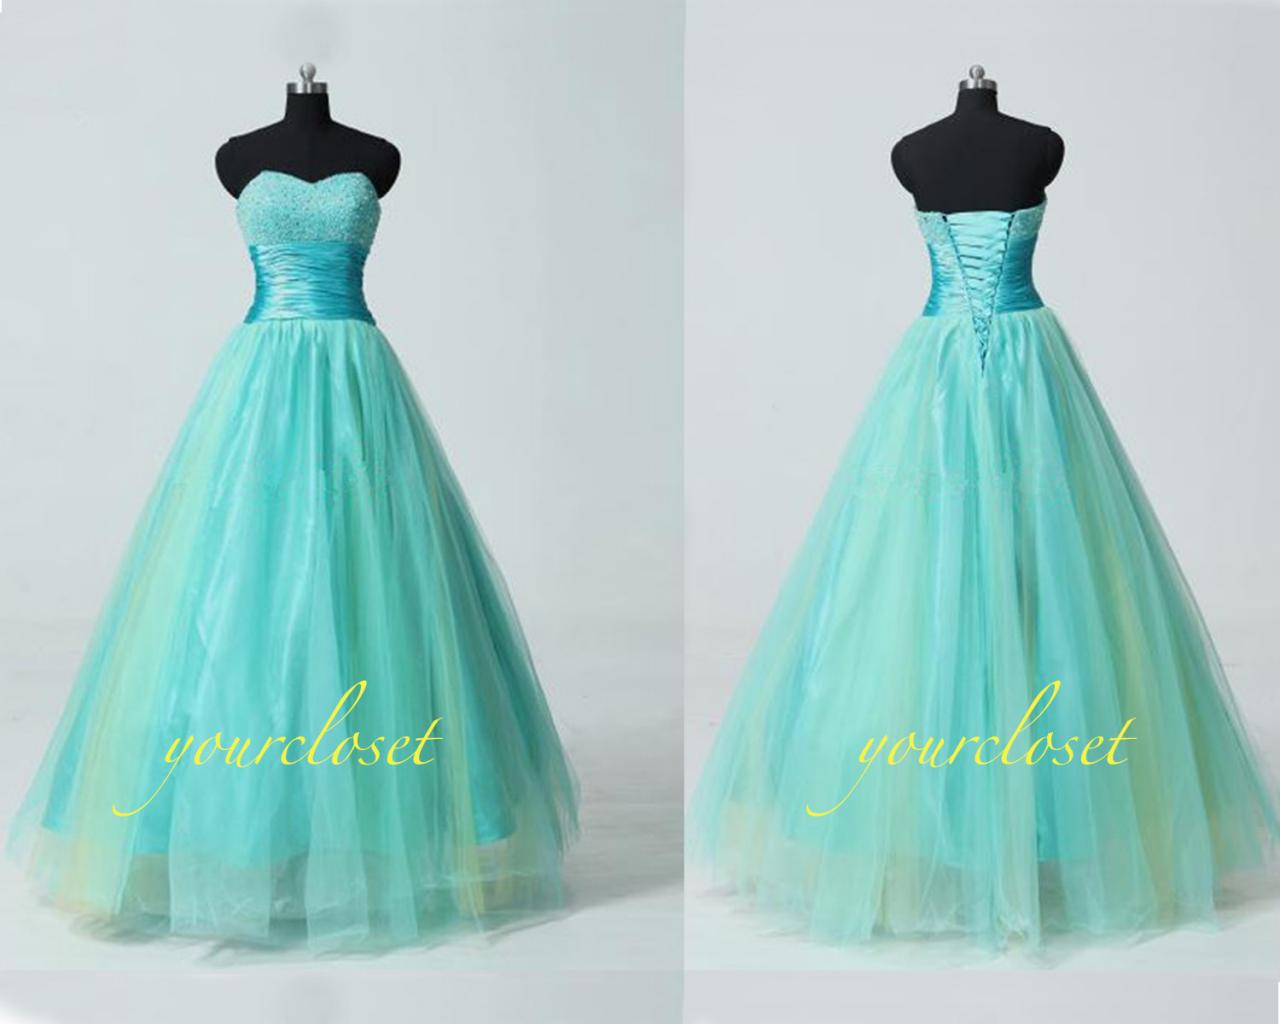 Sweetheart Ball Gown Prom Dress / Evening Dress